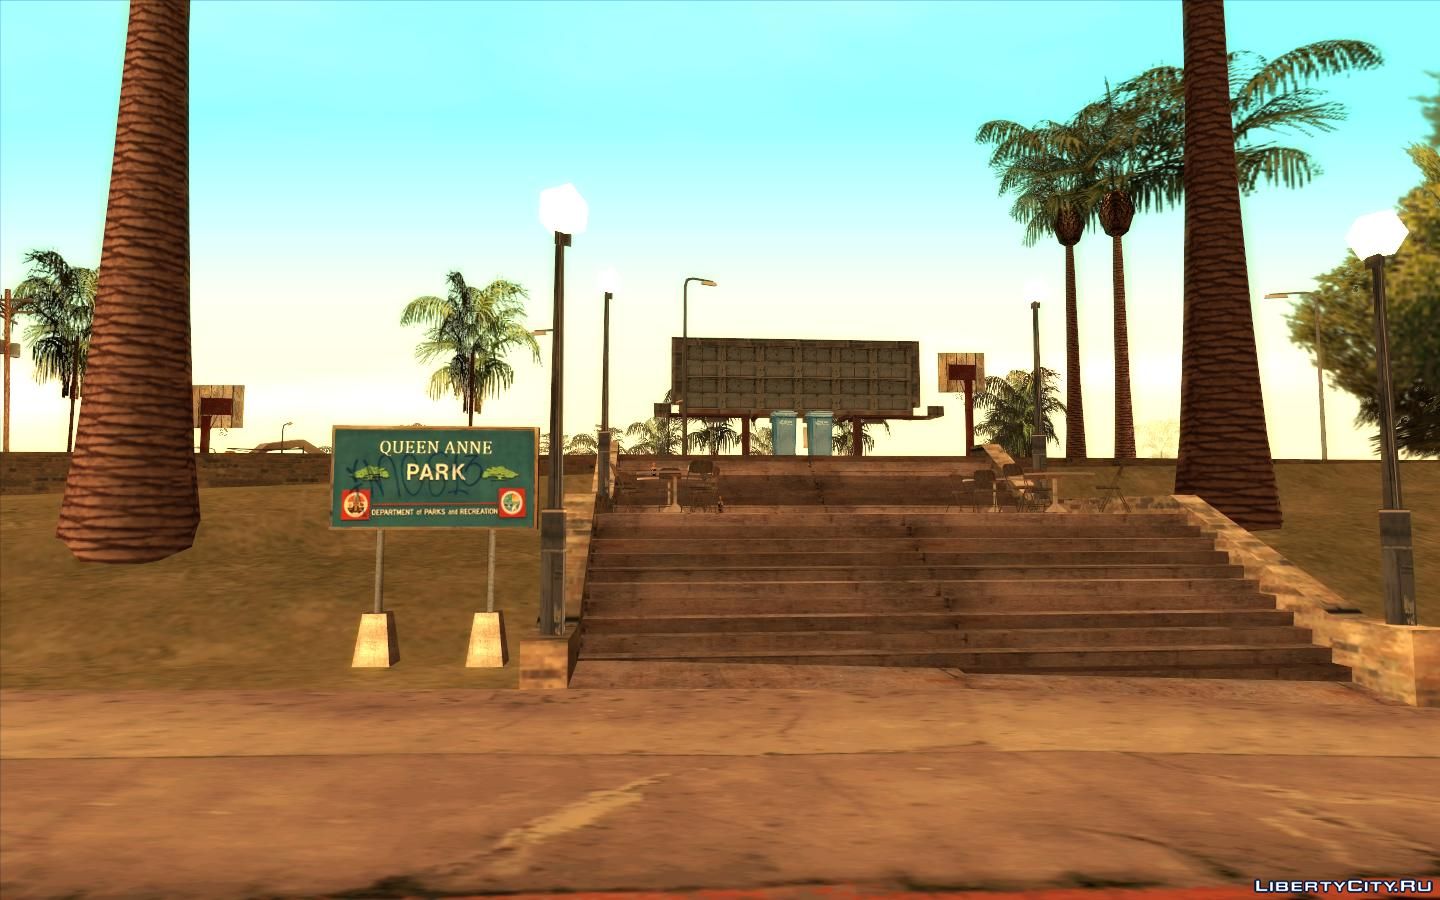 Los Santos, San Andreas (AJM PS3 Network GTA V), AJM STUDIOS